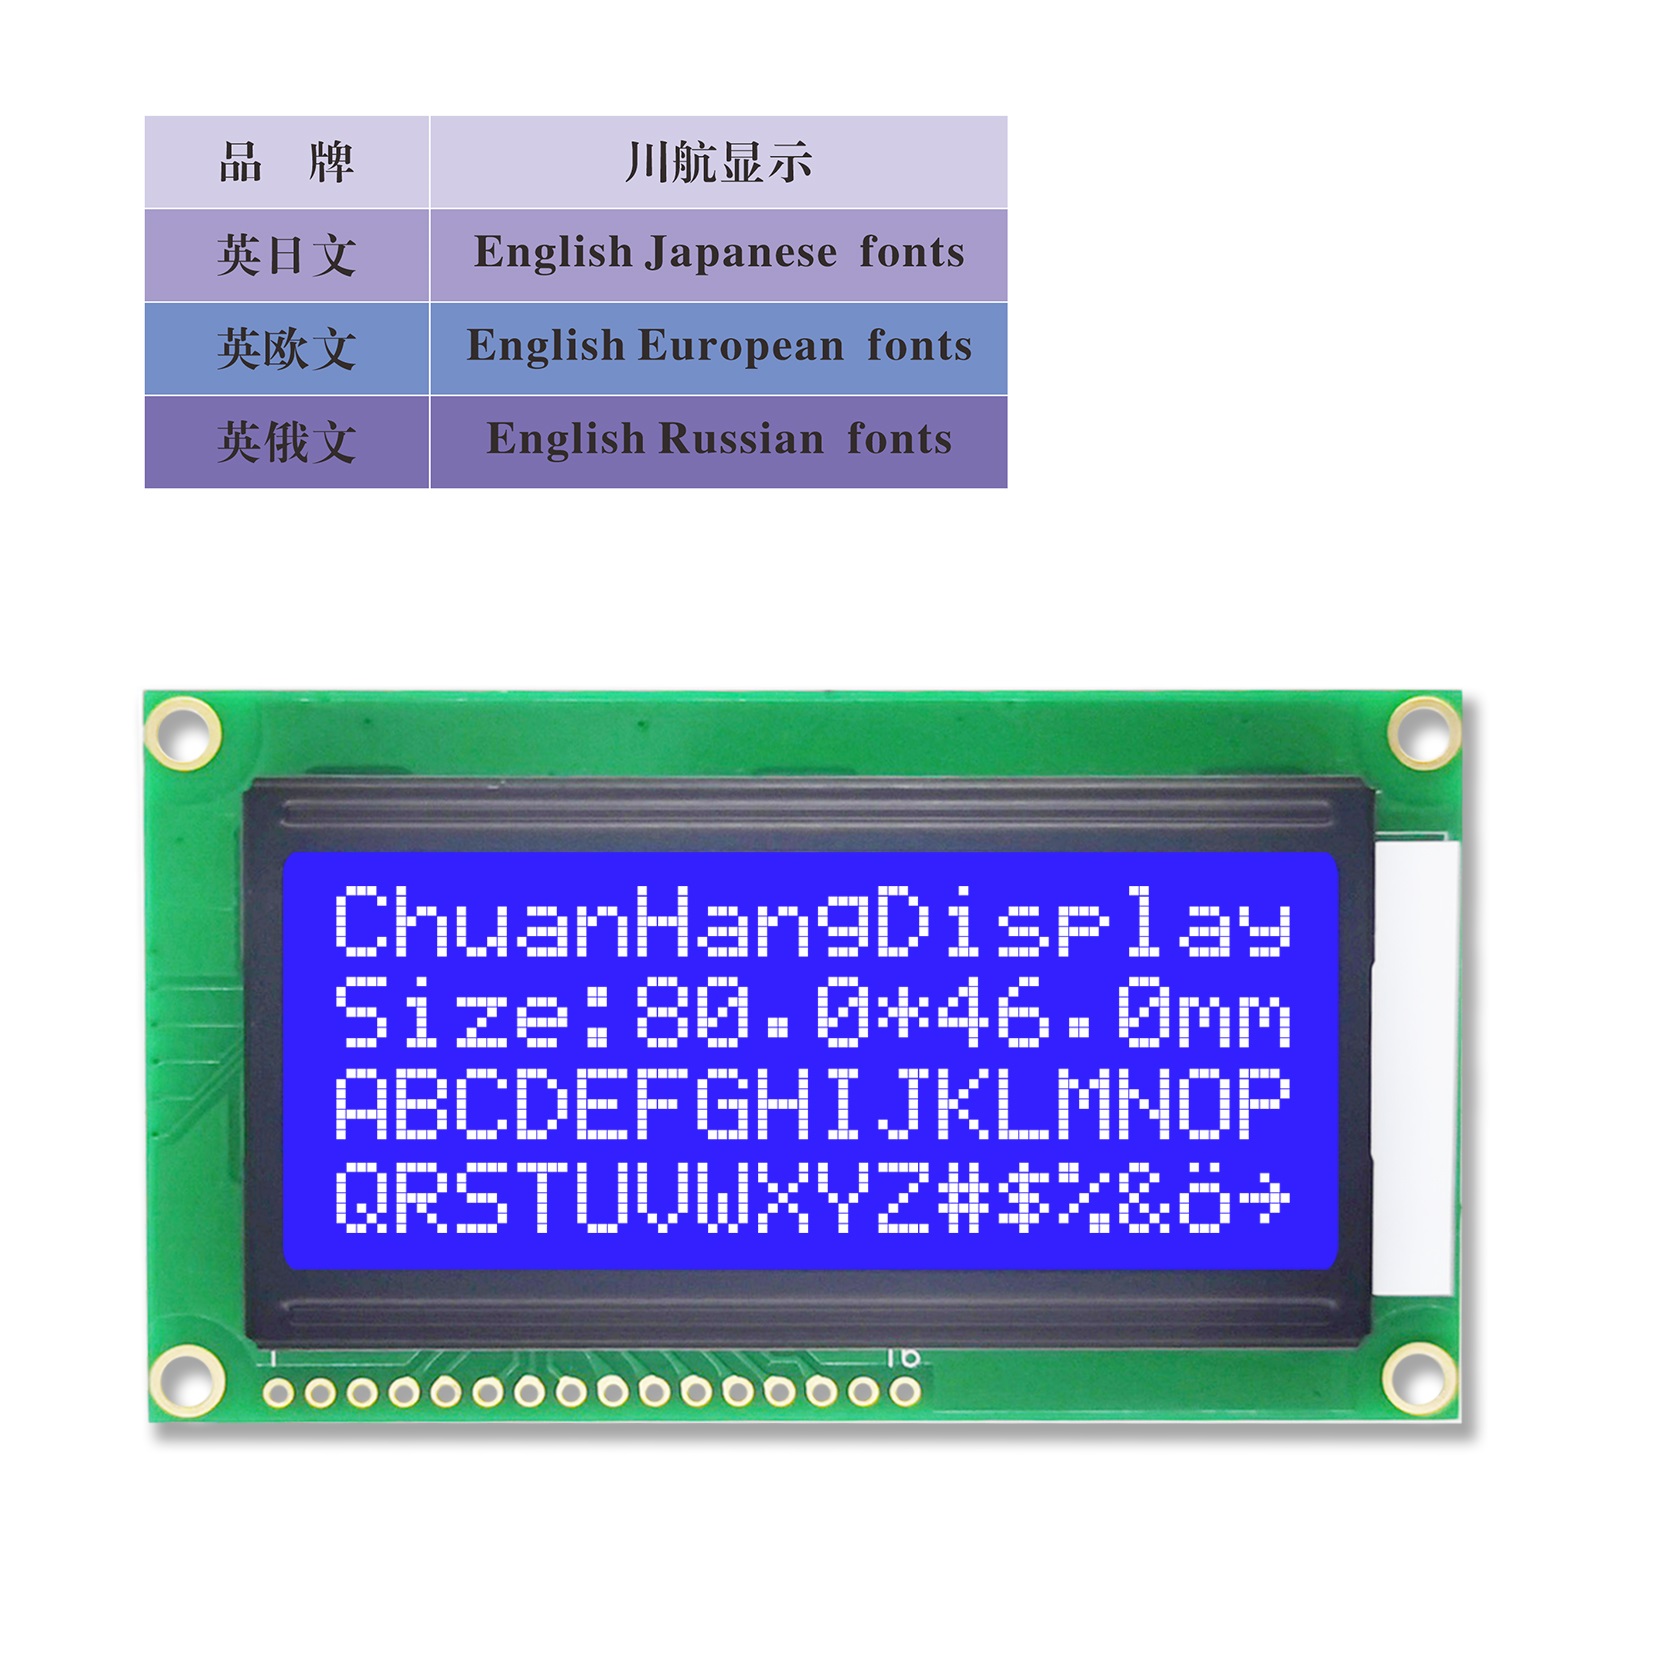 1604A工厂直销LCD液晶屏16X4字符液晶模块5V 3.3V蓝黄灰白显示屏